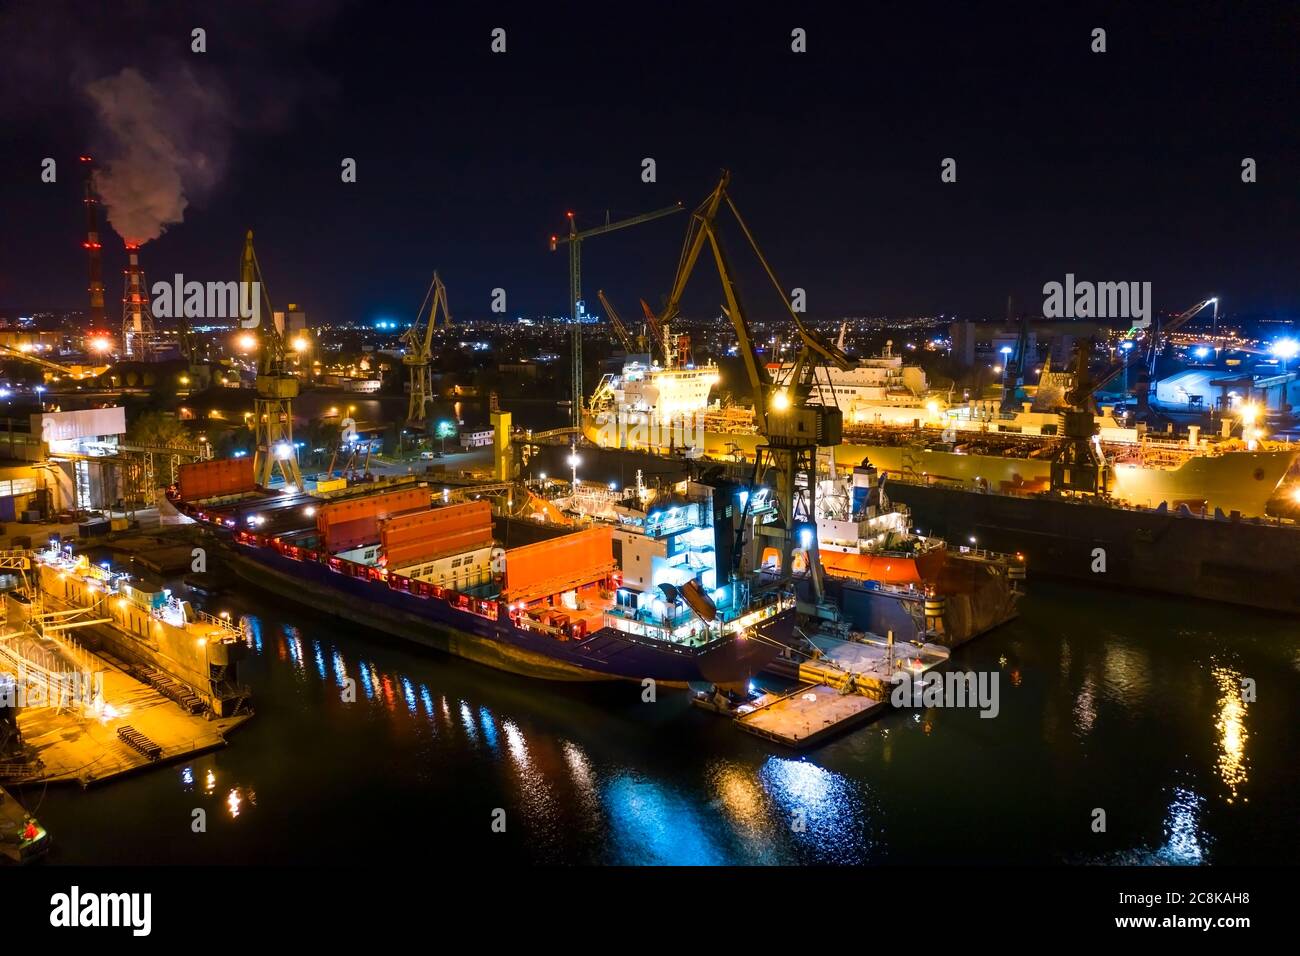 Belle nuit photo navires dans les docks secs à Gdansk Chantier naval de Pologne Banque D'Images